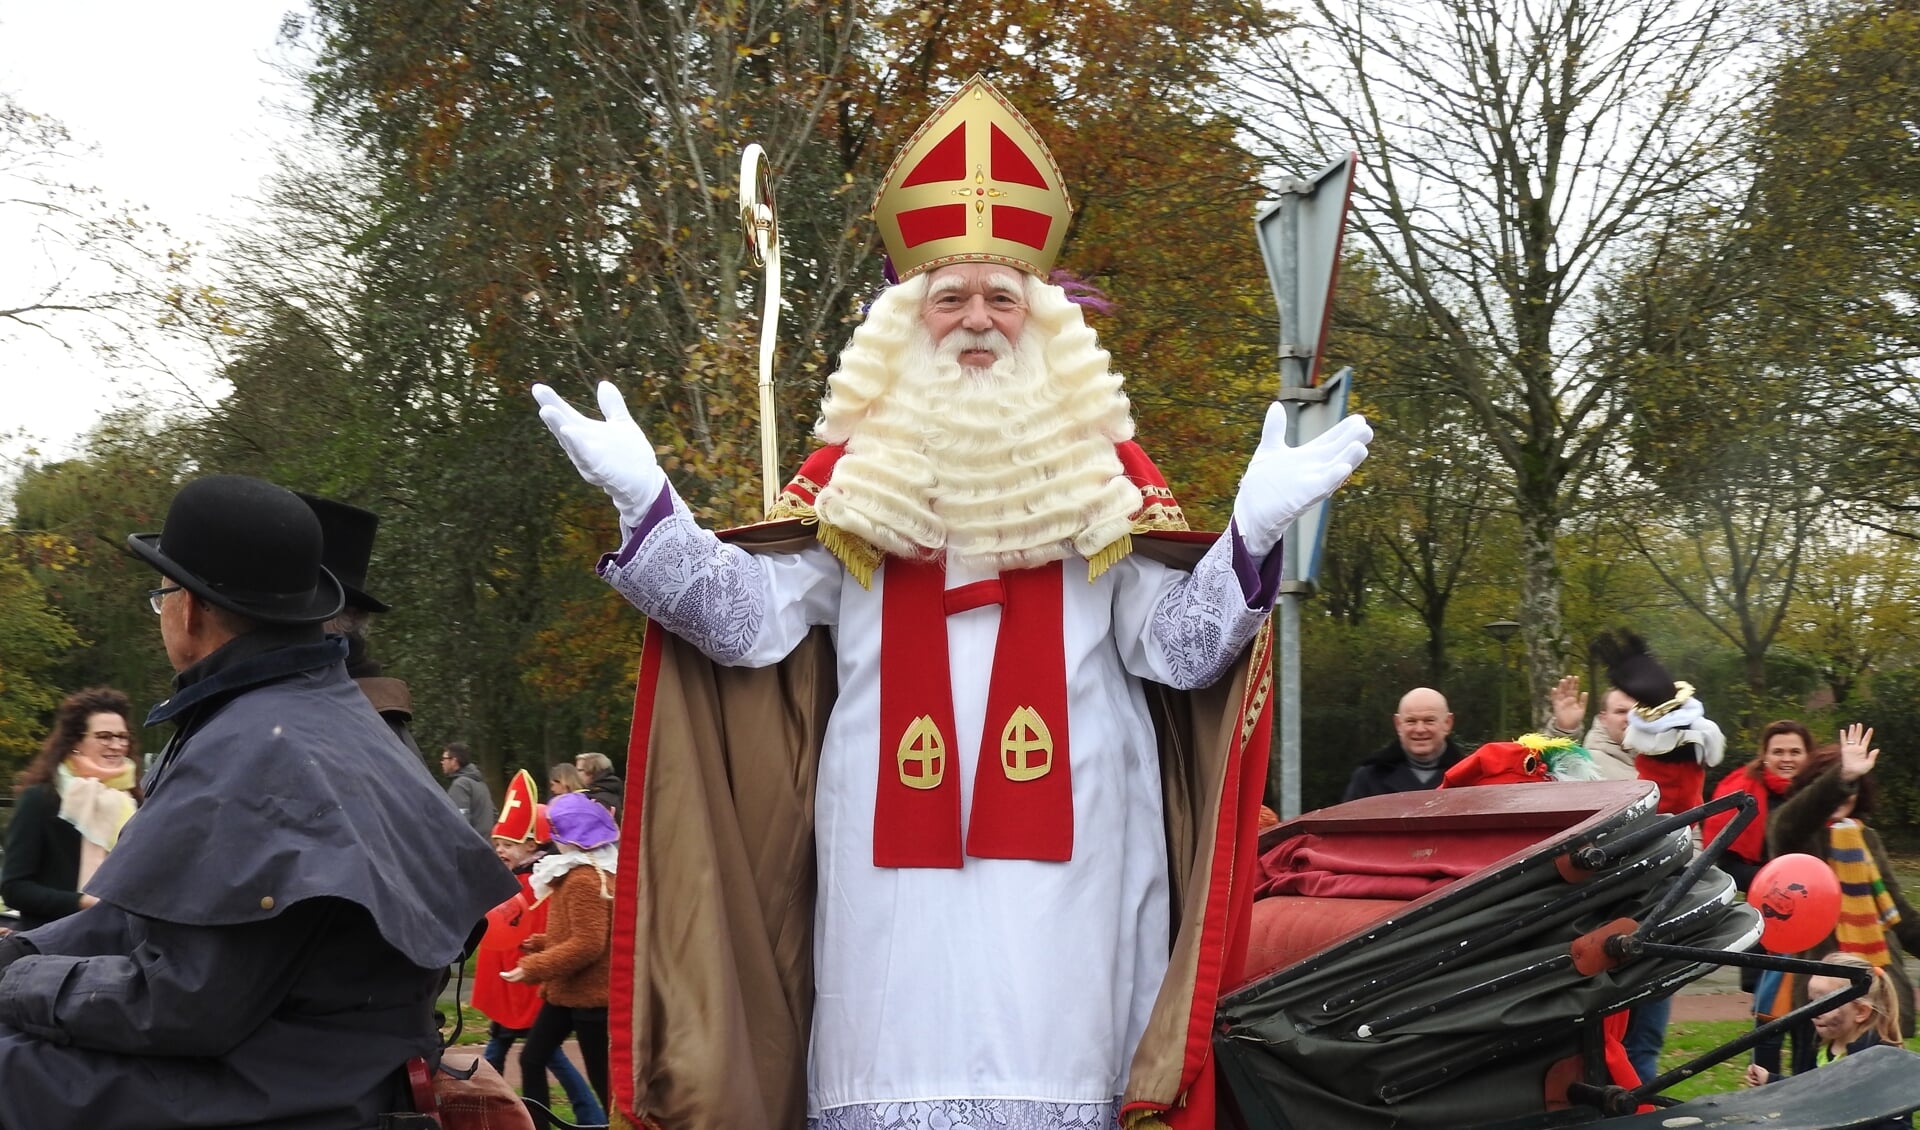 De traditionele intocht van Sinterklaas in Castricum vorig jaar.